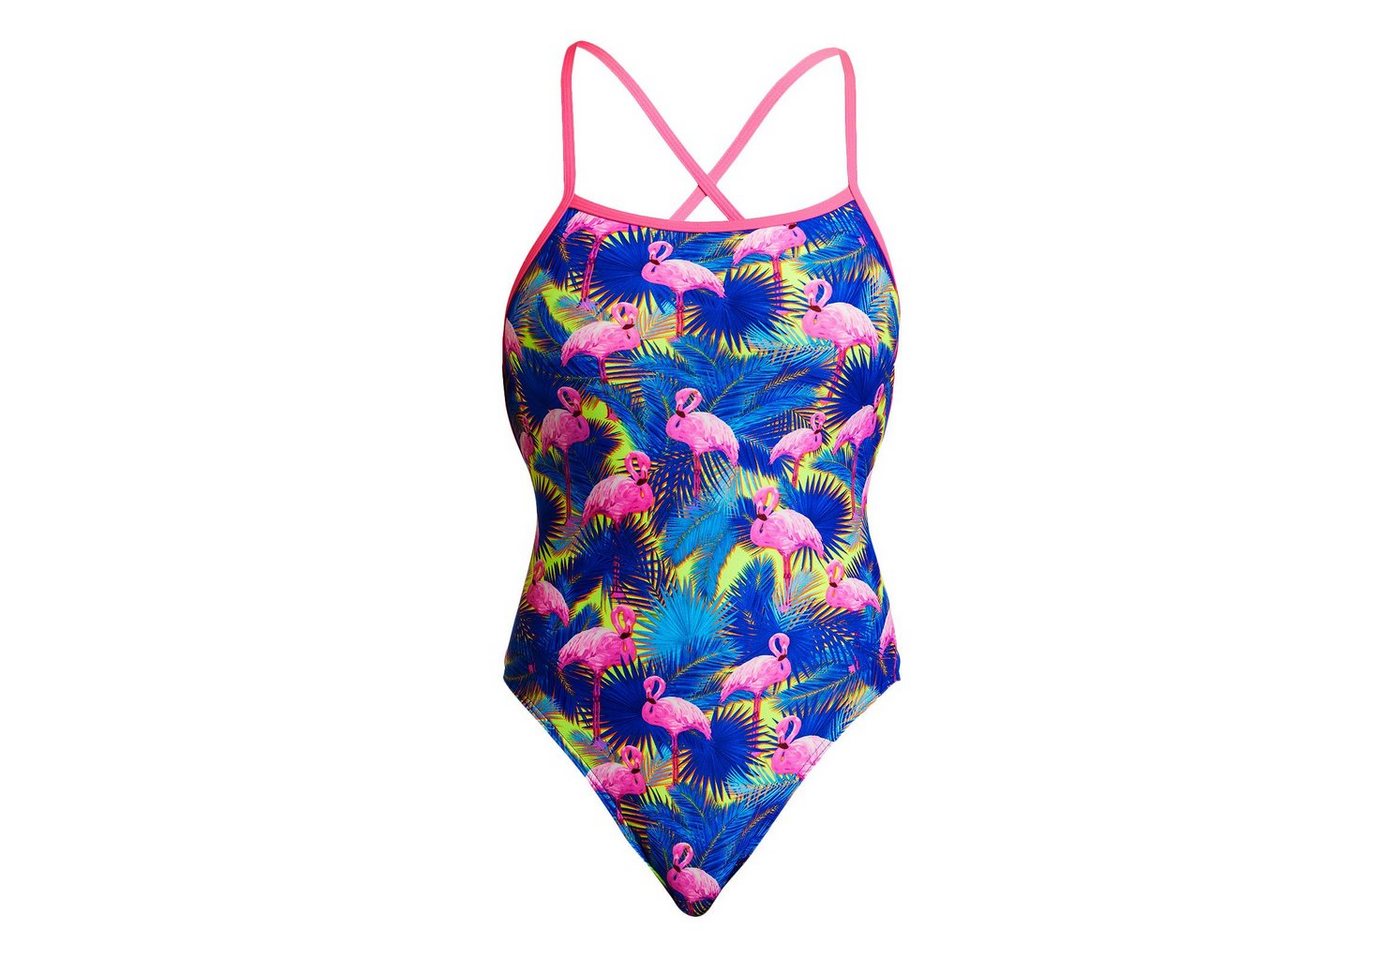 Funkita Badeanzug Strapped In Mingo Magic mit Flamingos und Palmen in kräftigen Farben von Funkita